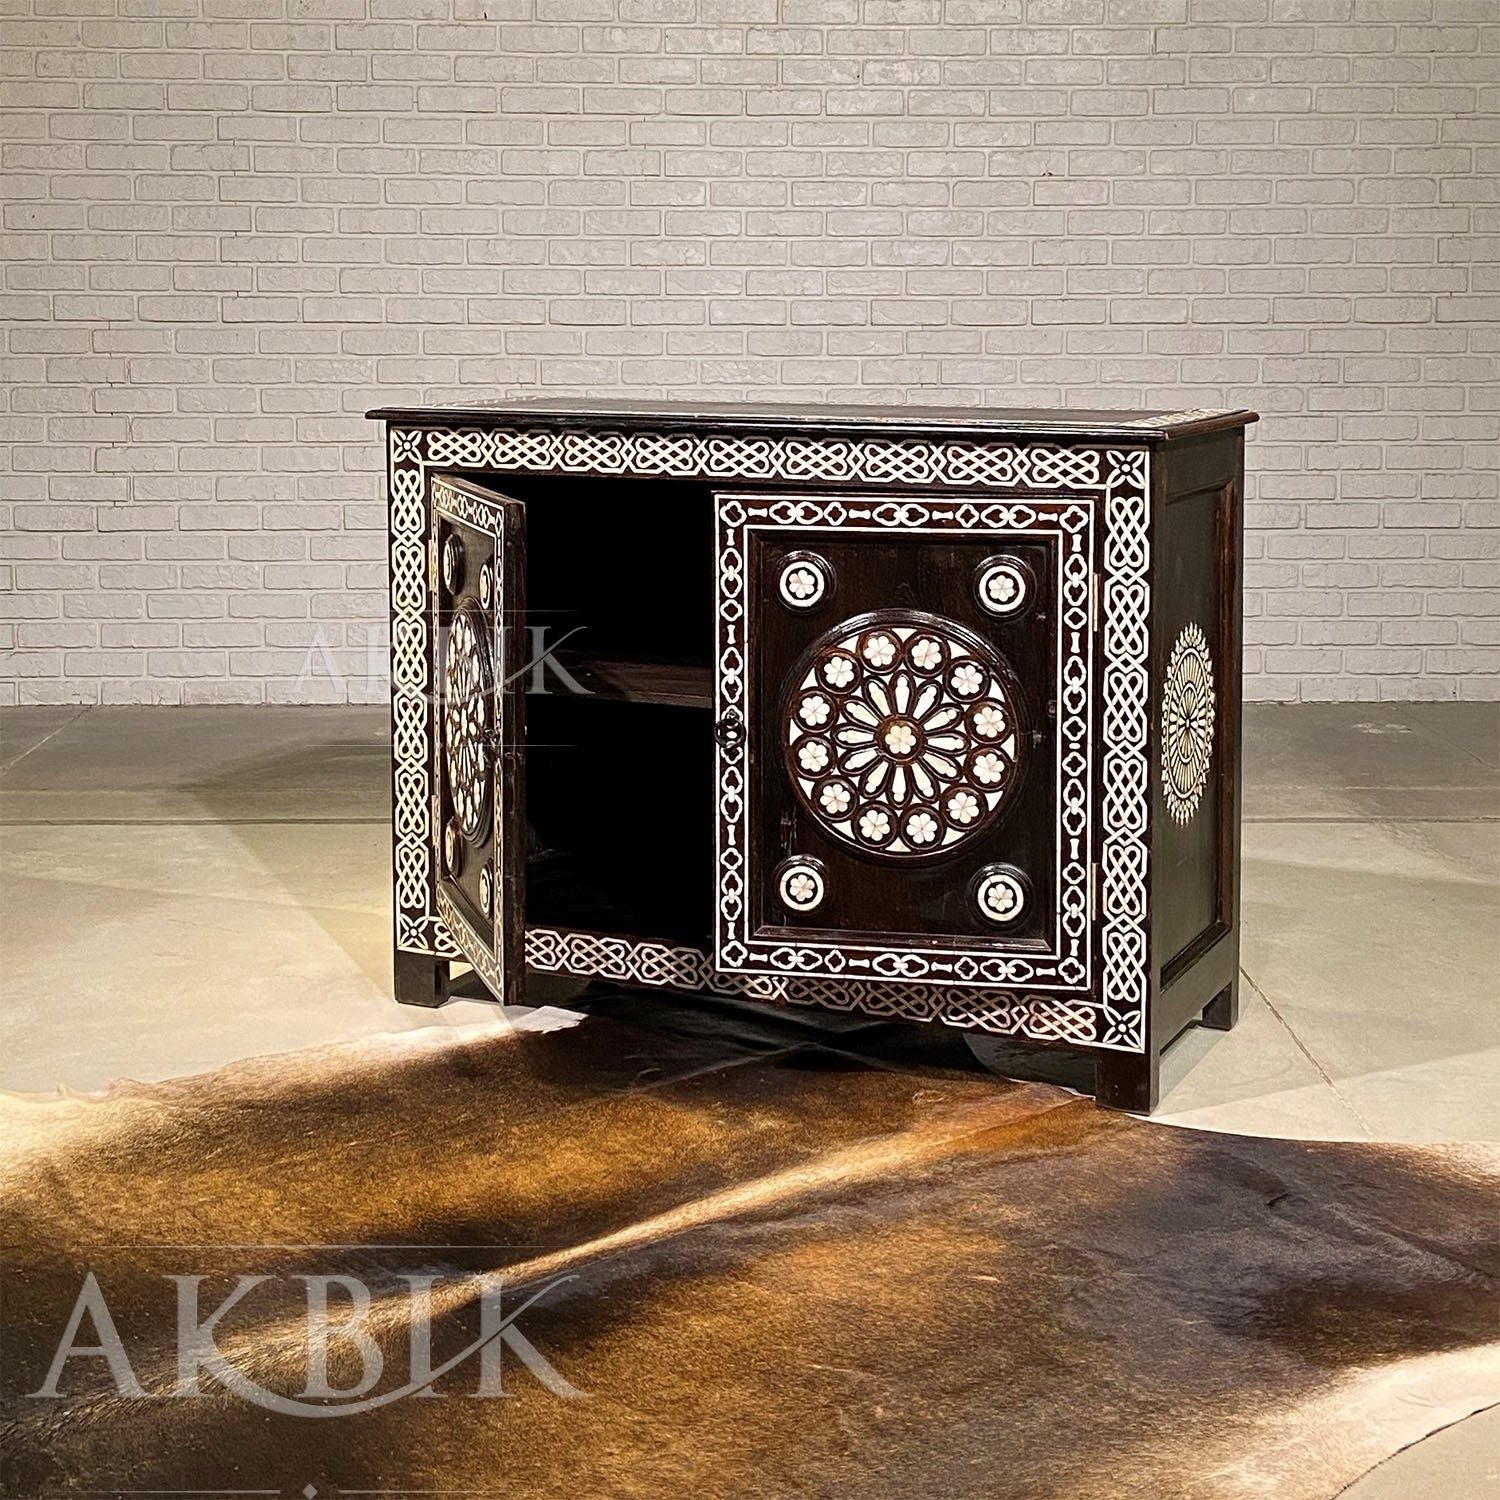 RINGS OF ROSES CABINET - AKBIK Furniture & Design